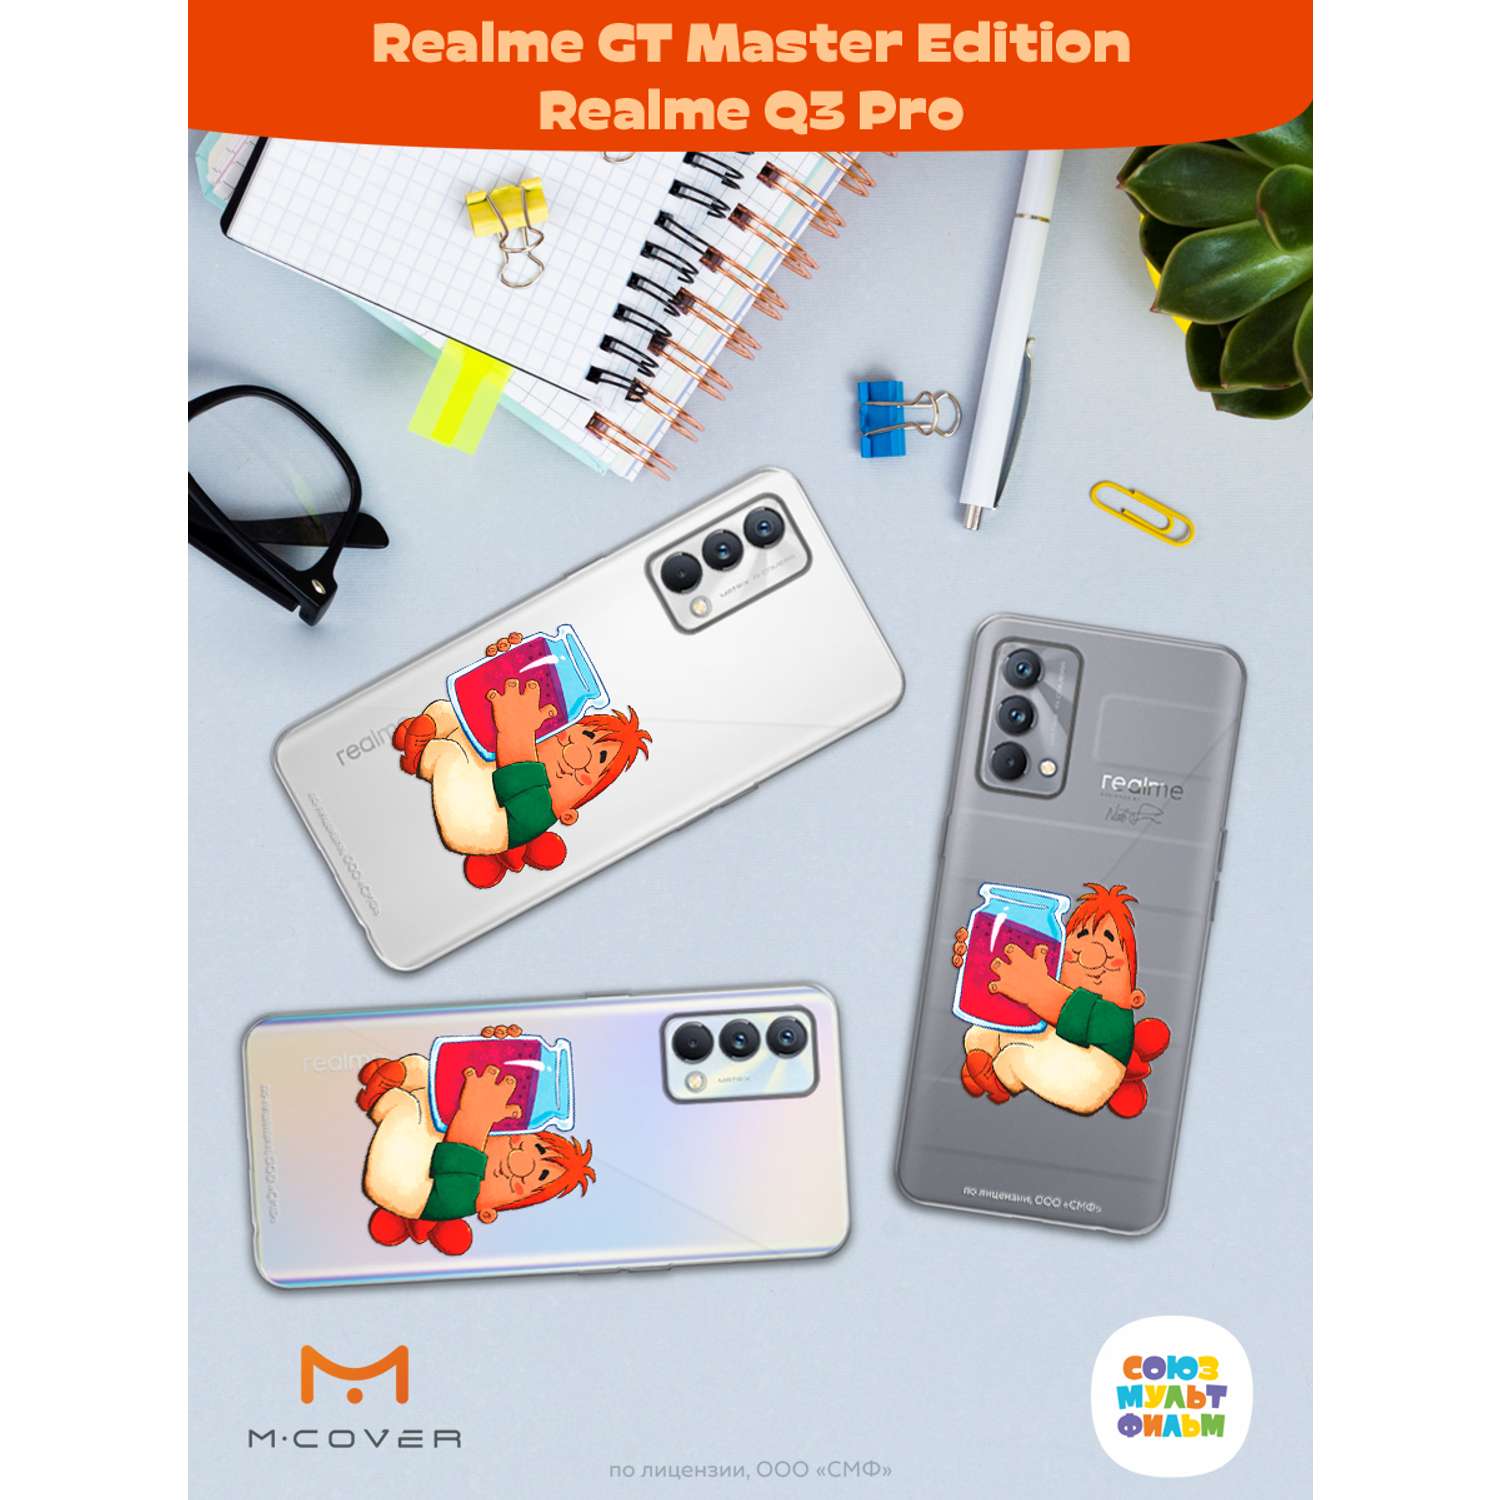 Силиконовый чехол Mcover для смартфона Realme GT Master Edition Q3 Pro Союзмультфильм баночка варенья - фото 3